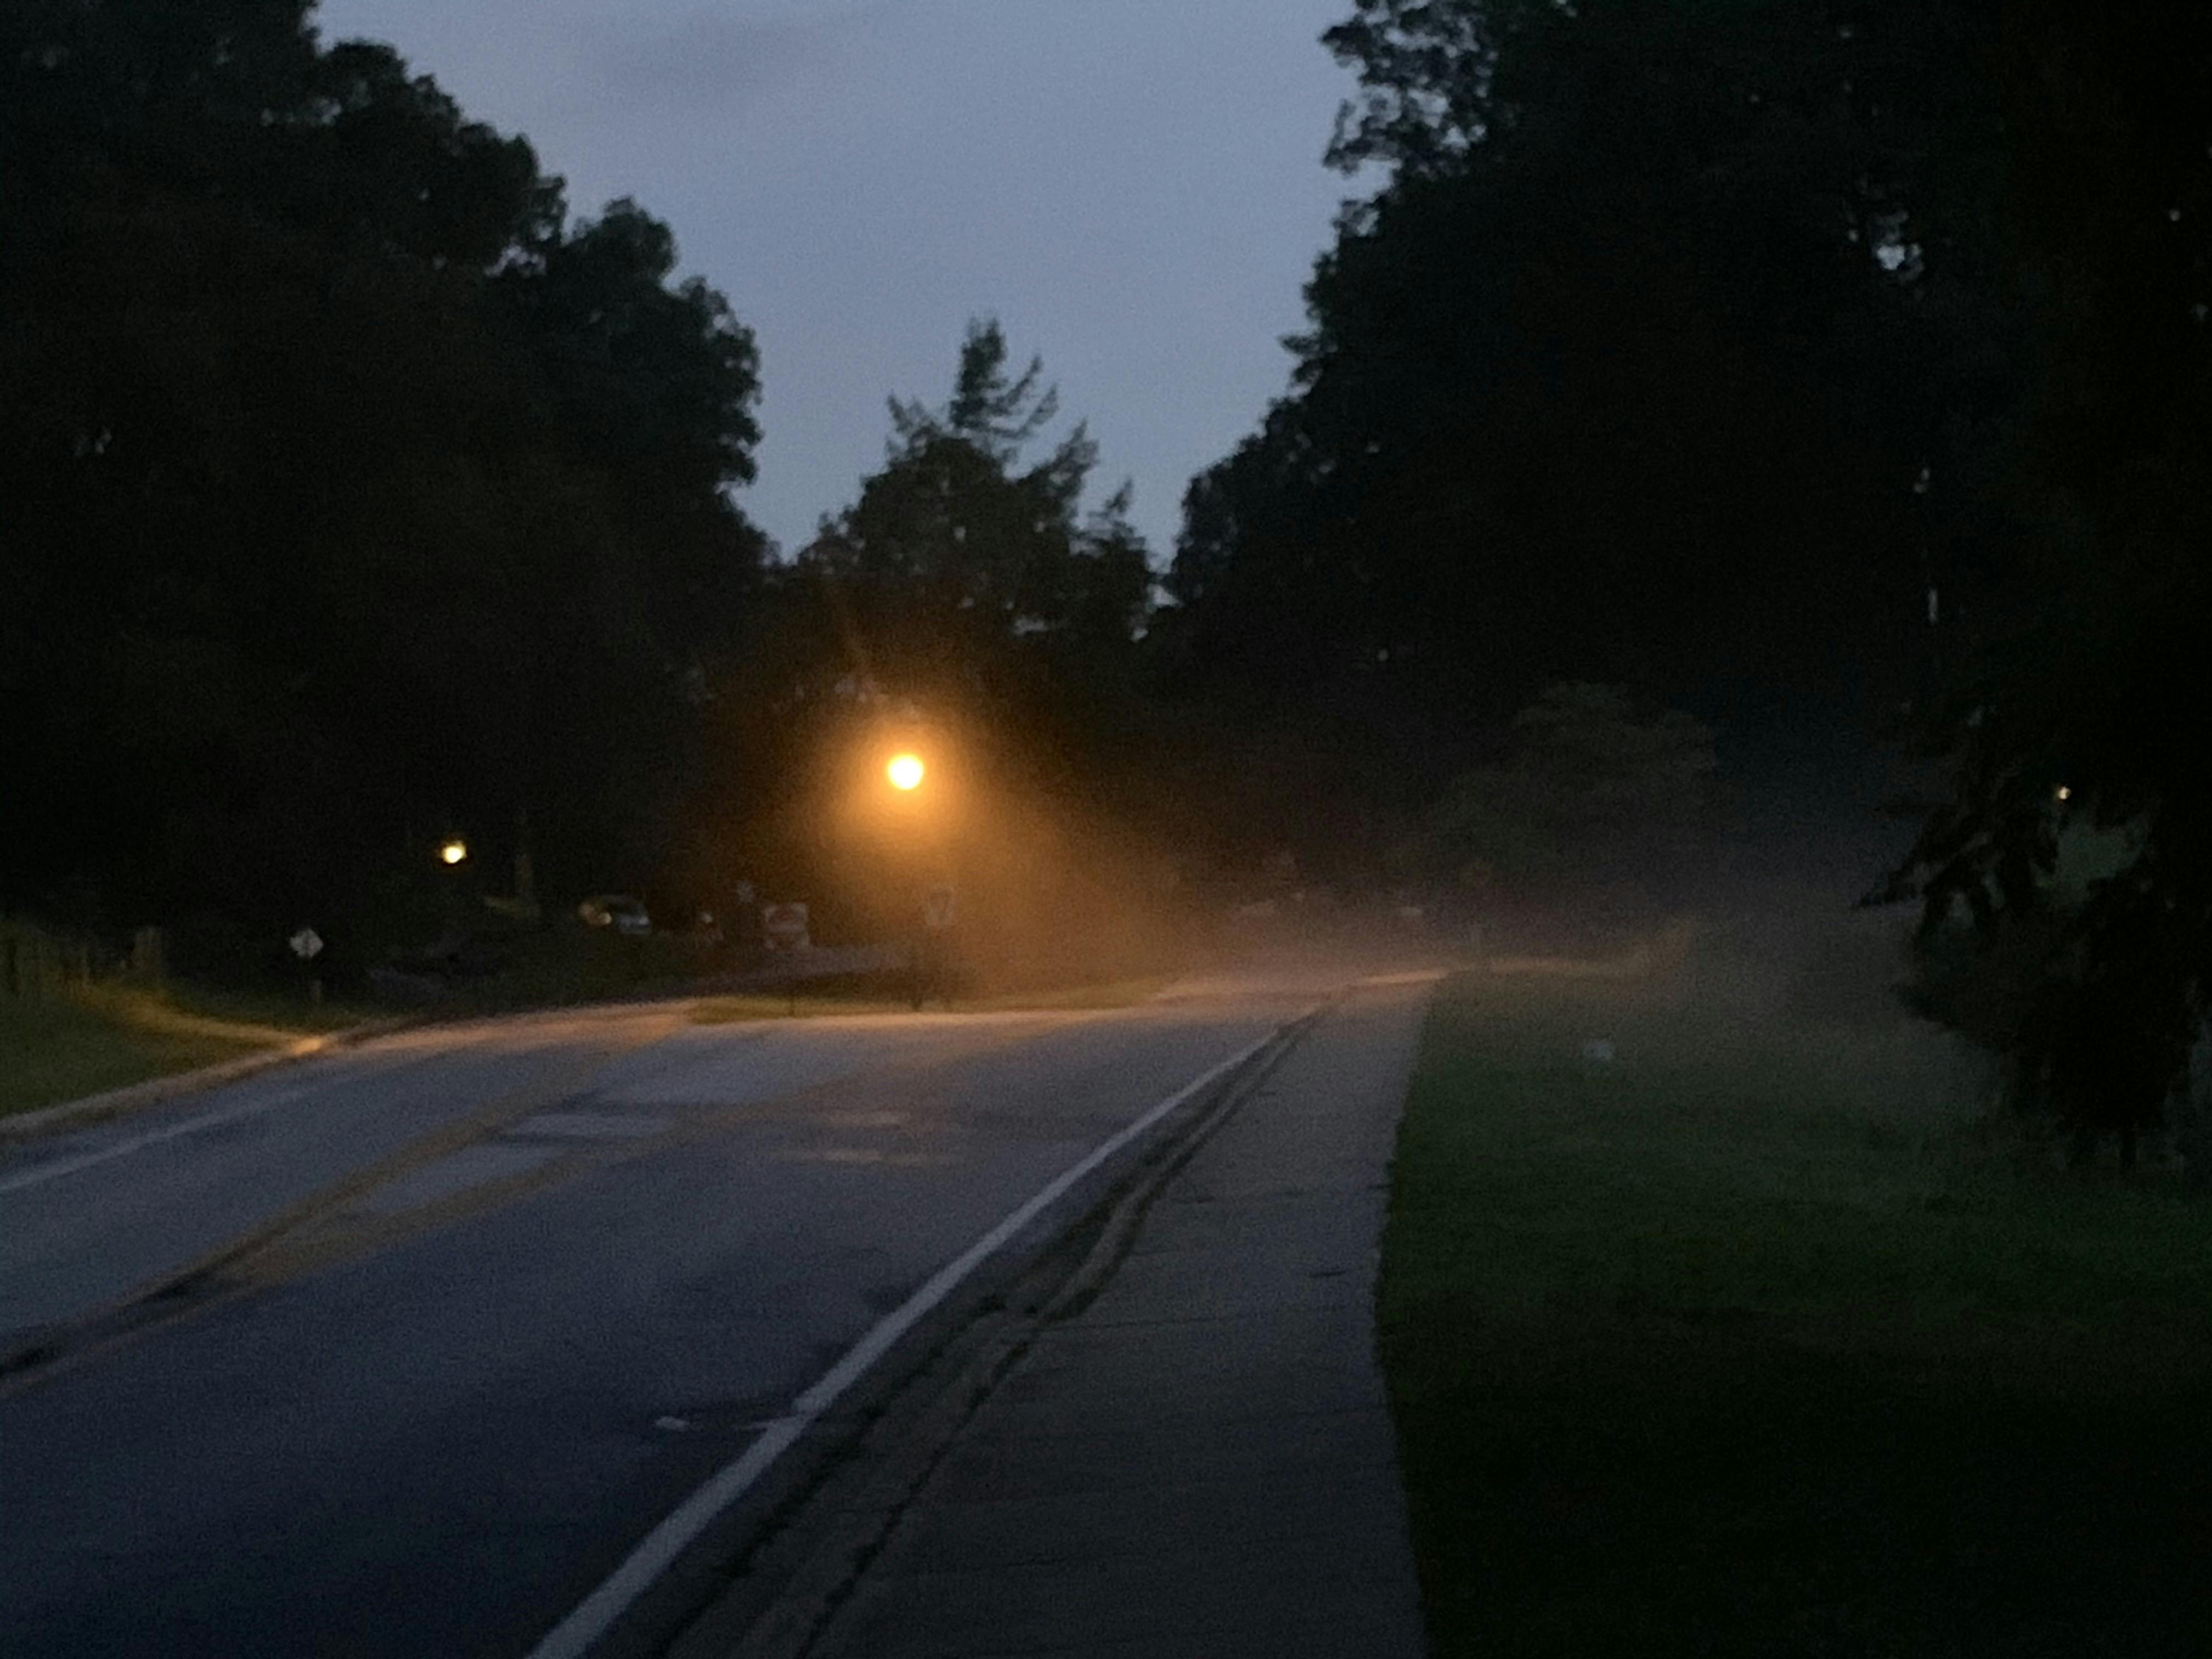 Fog on a street at dusk